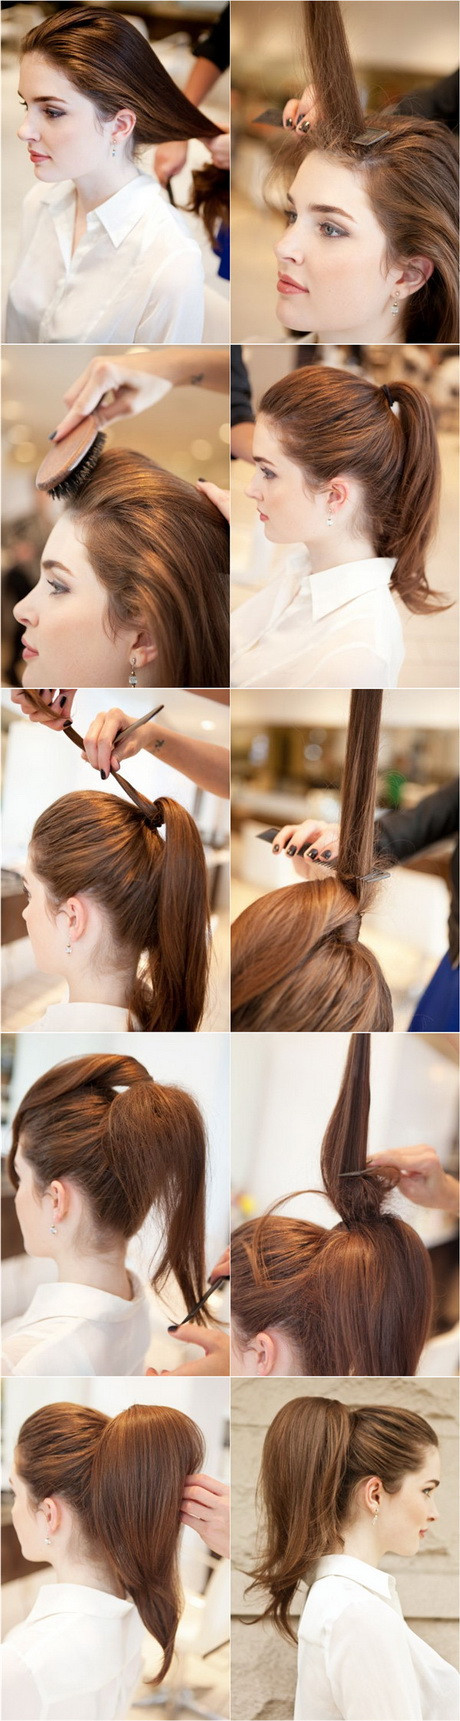 Schöne Einfache Frisuren
 Schöne einfache frisuren für lange haare